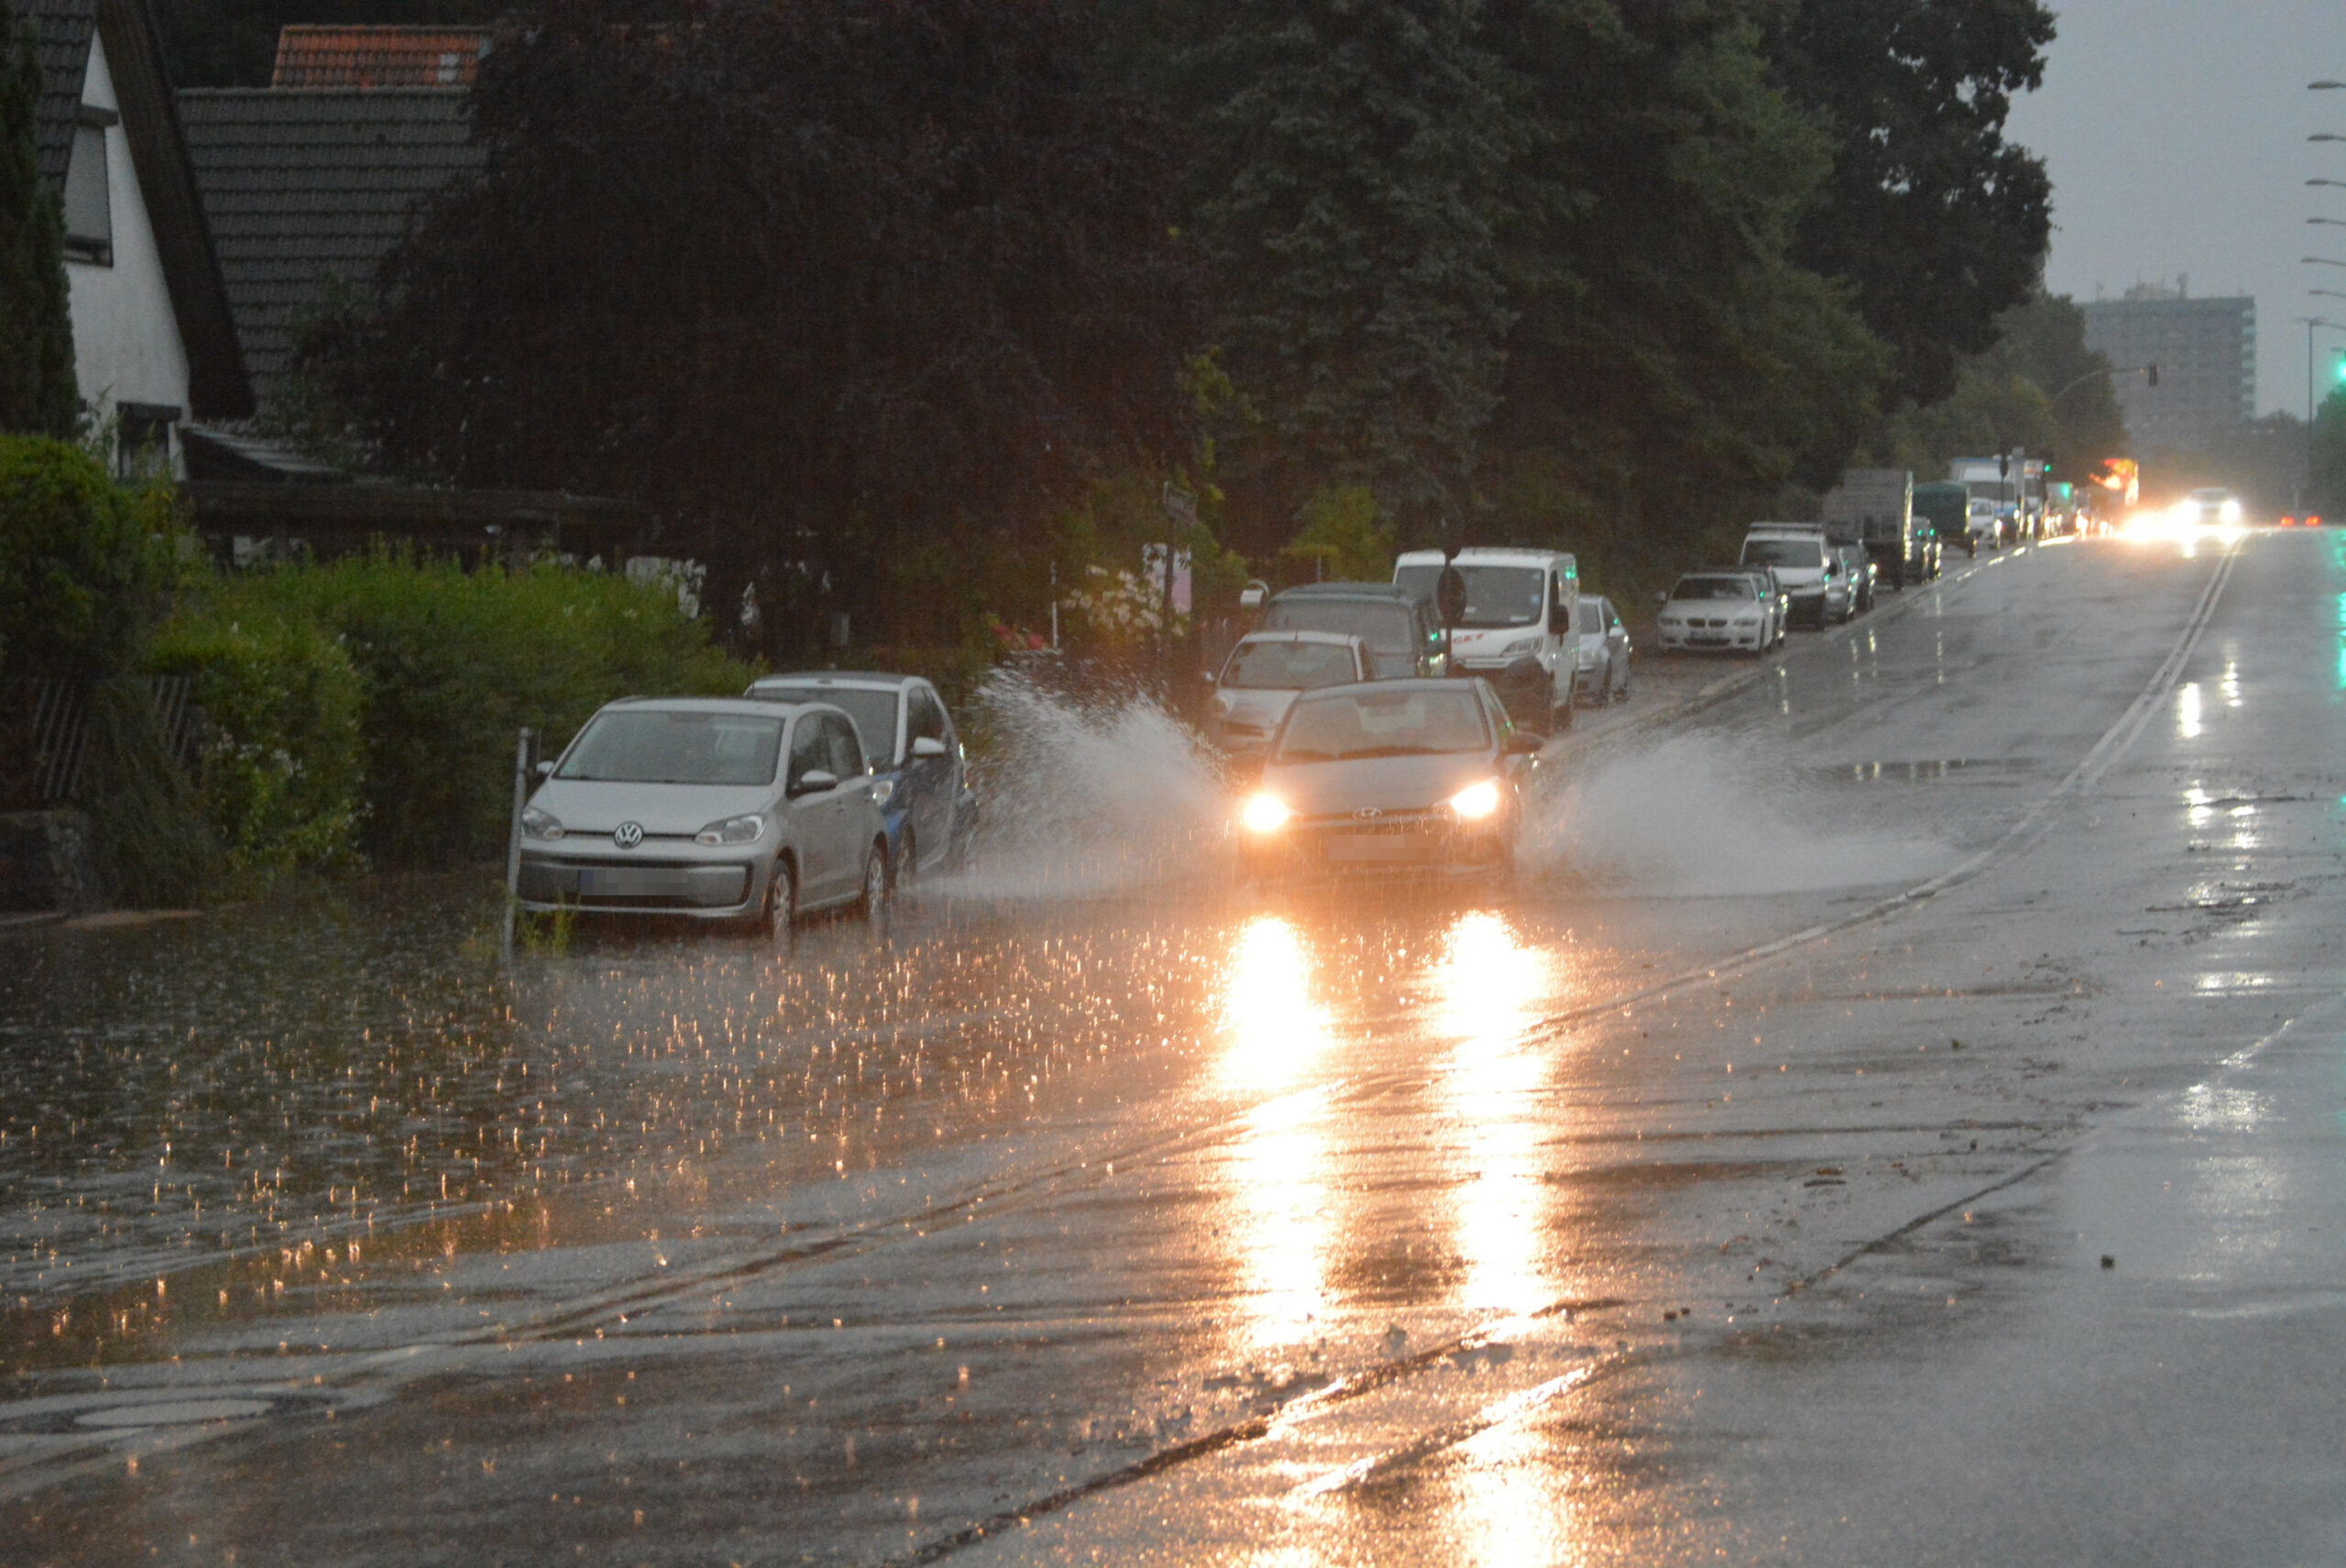 Auto fährt durch Regenwasser auf der Straße